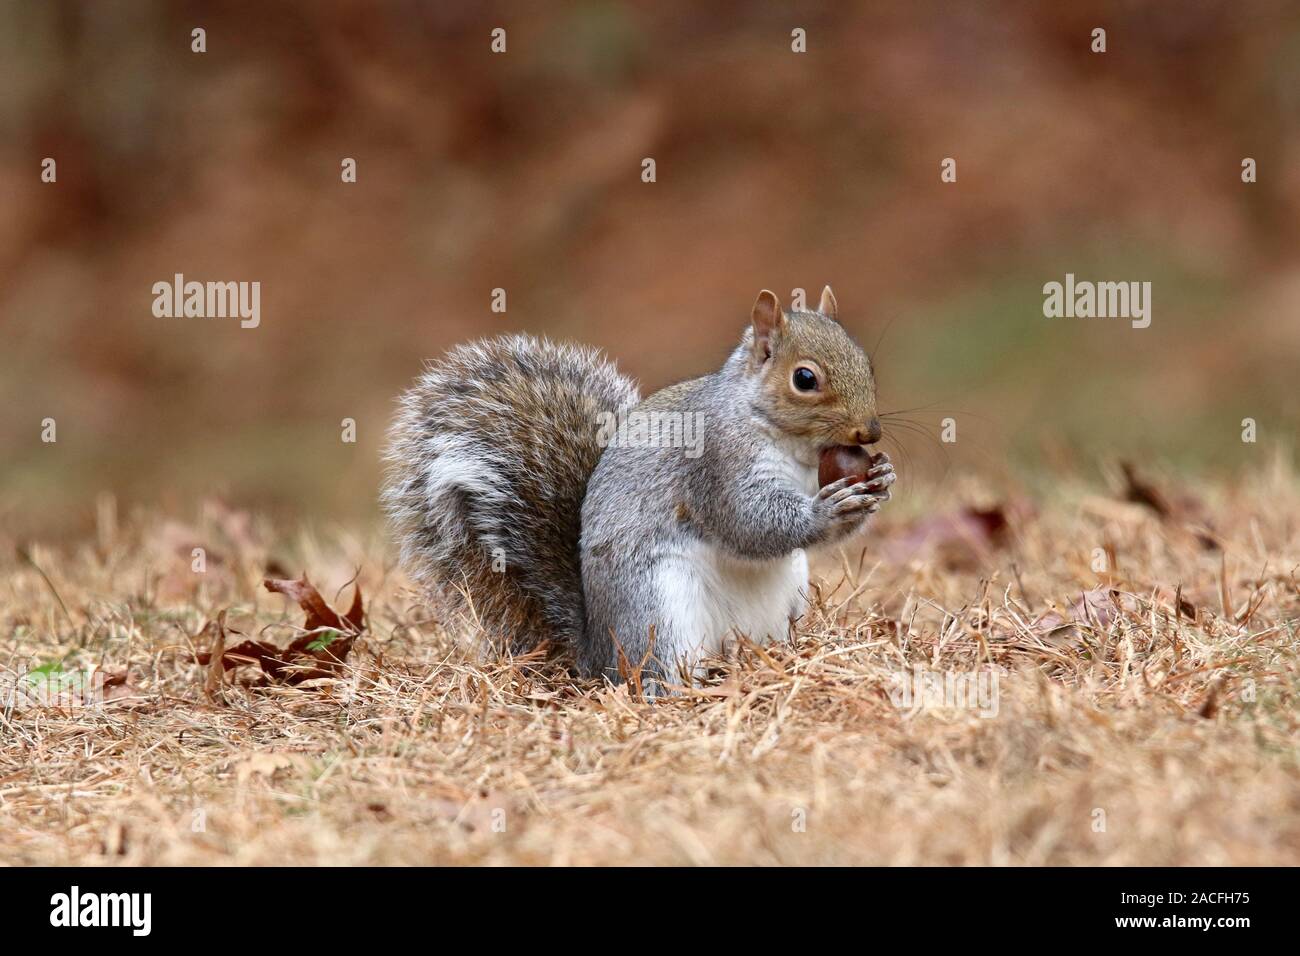 Un écureuil gris Sciurus carolinensis manger un gland à l'automne Banque D'Images